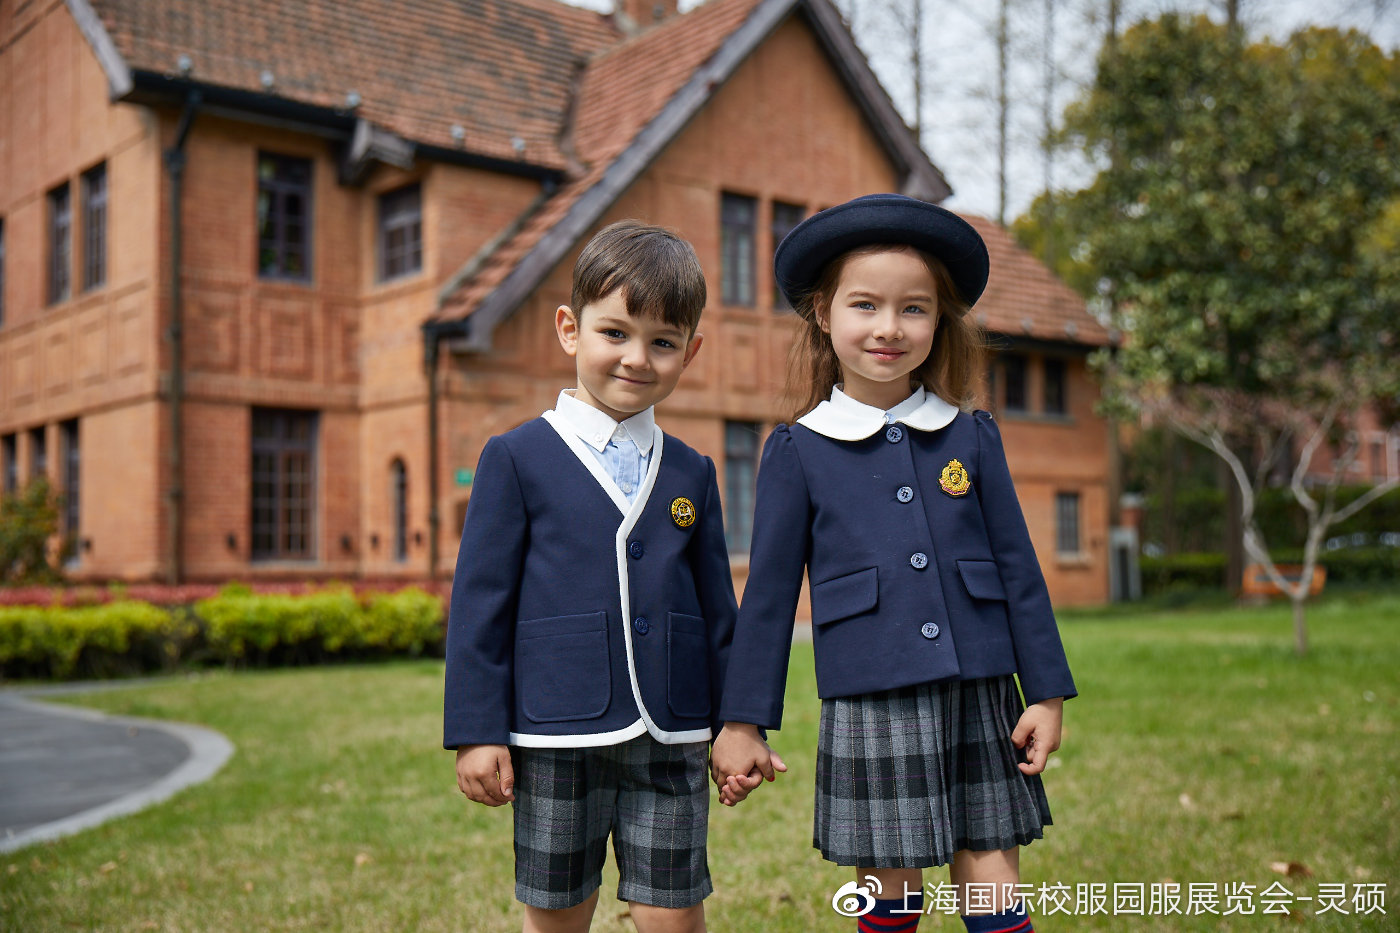 来源美国 更了解国际经典制式校服 为中国儿童提供高品质童装17年 让